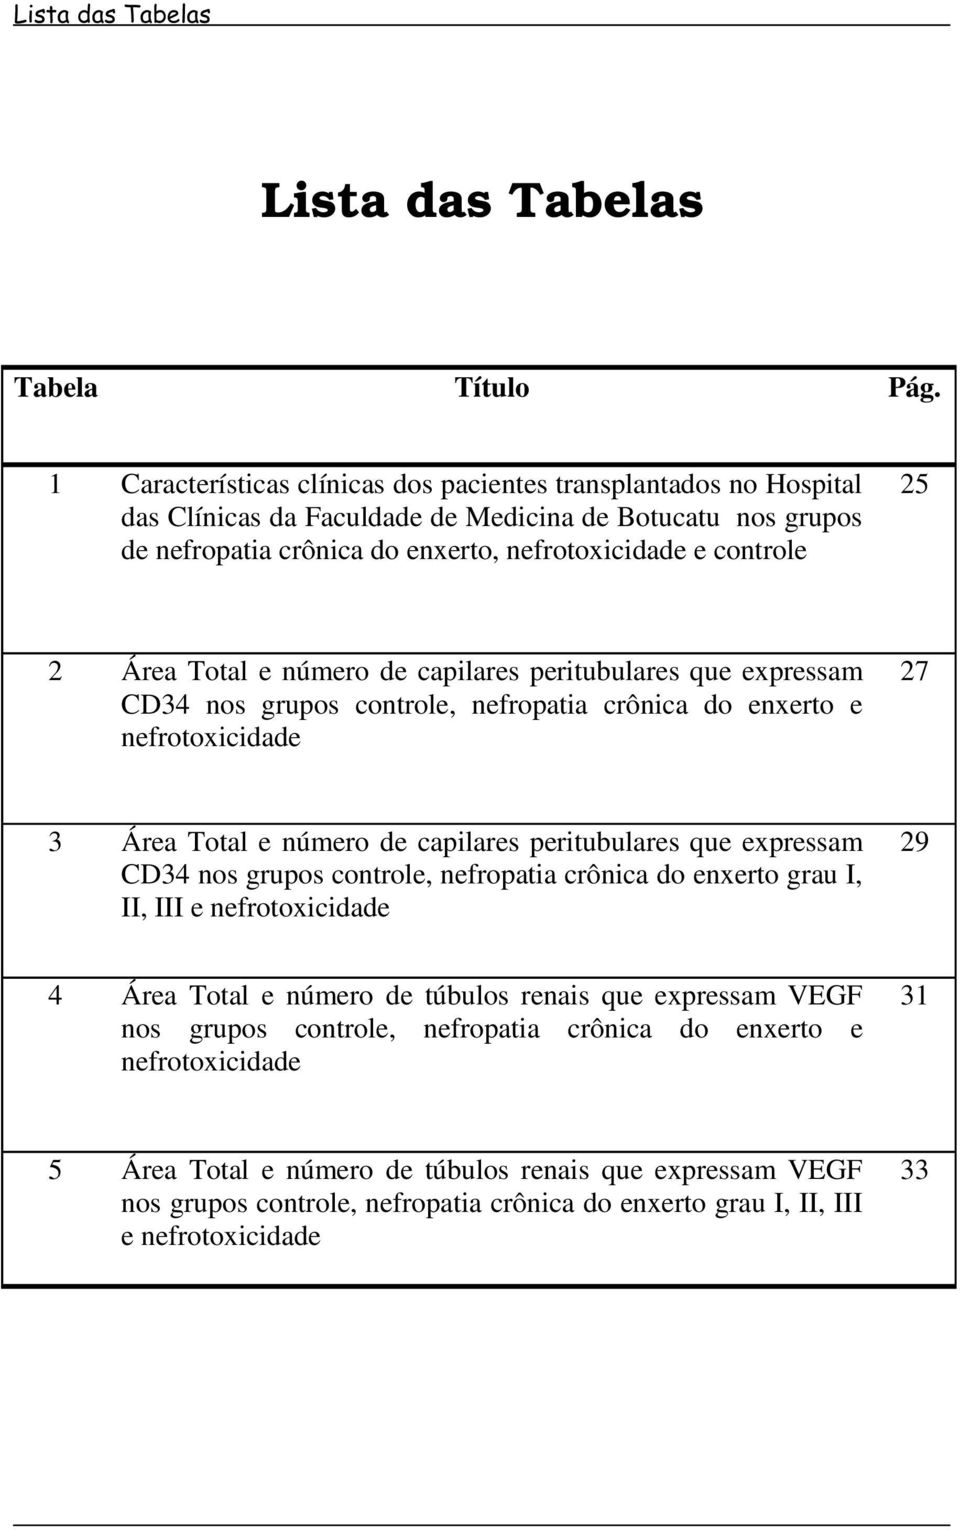 Total e número de capilares peritubulares que expressam CD34 nos grupos controle, nefropatia crônica do enxerto e nefrotoxicidade 27 3 Área Total e número de capilares peritubulares que expressam